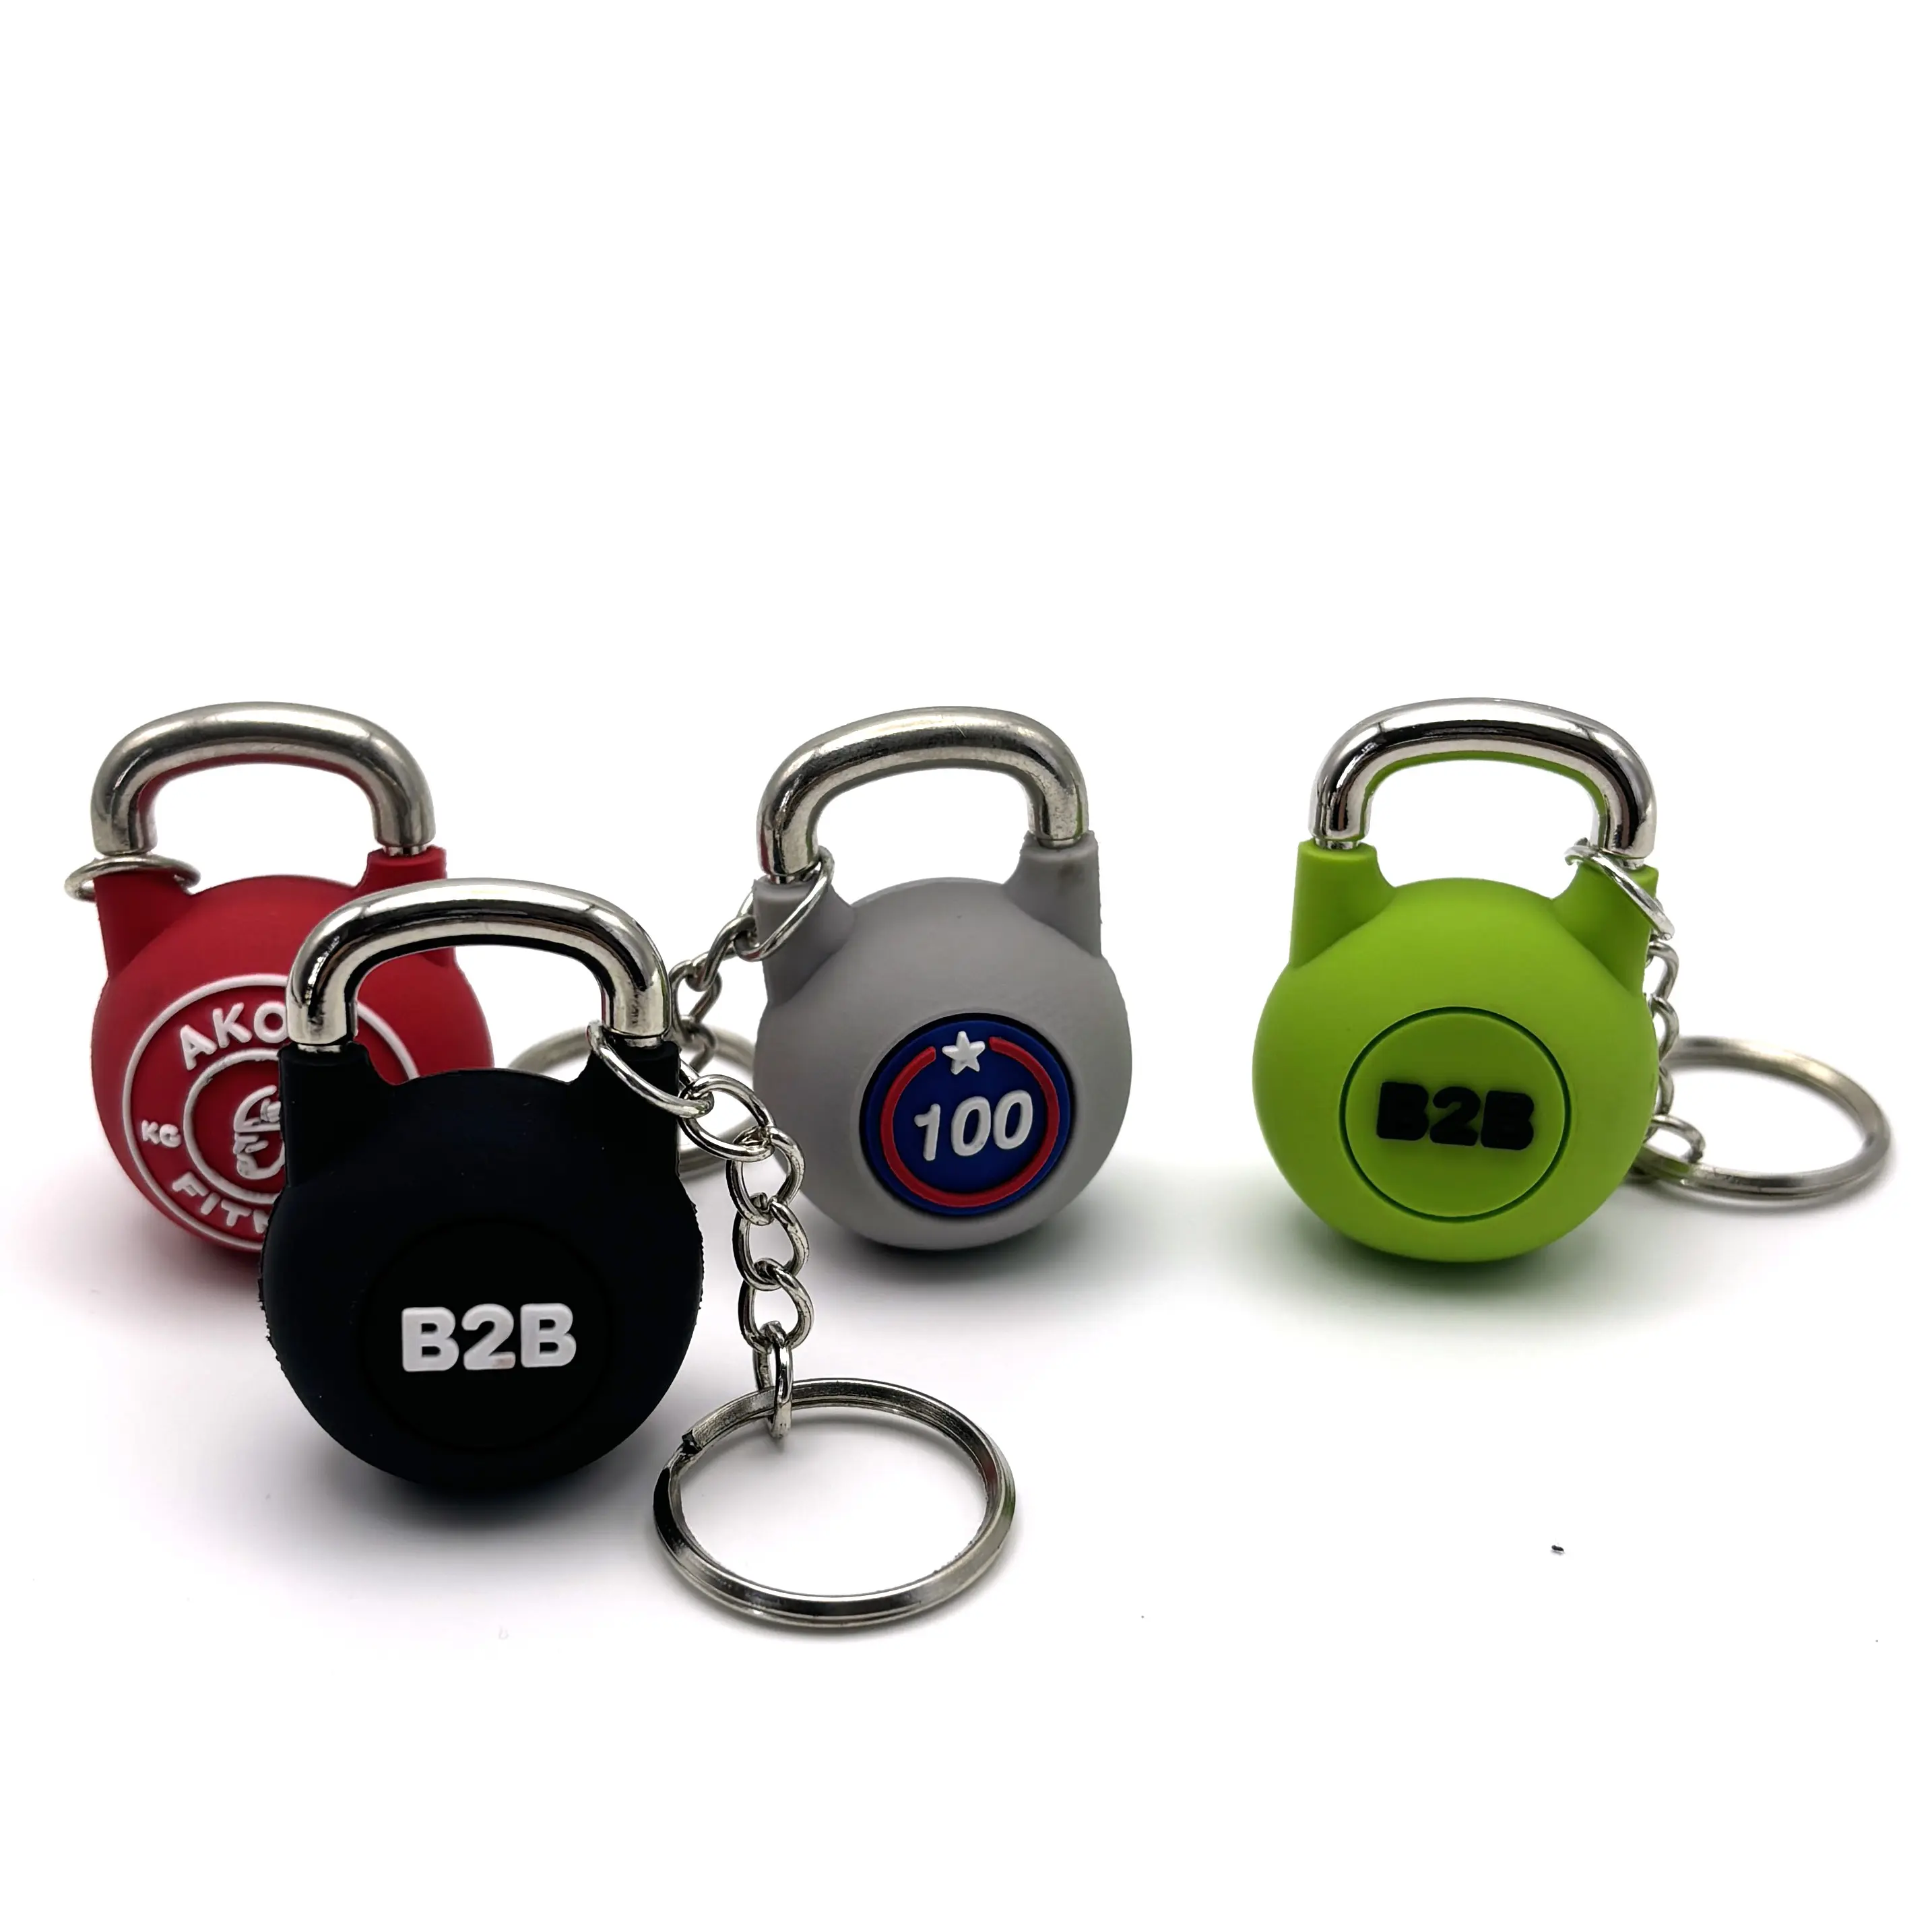 Promosyon hediyelik eşya lüks Mini Kettlebell modeli kauçuk anahtarlık erkekler için özel 2D /3D yumuşak PVC anahtarlık anahtarlıklar Logo ile